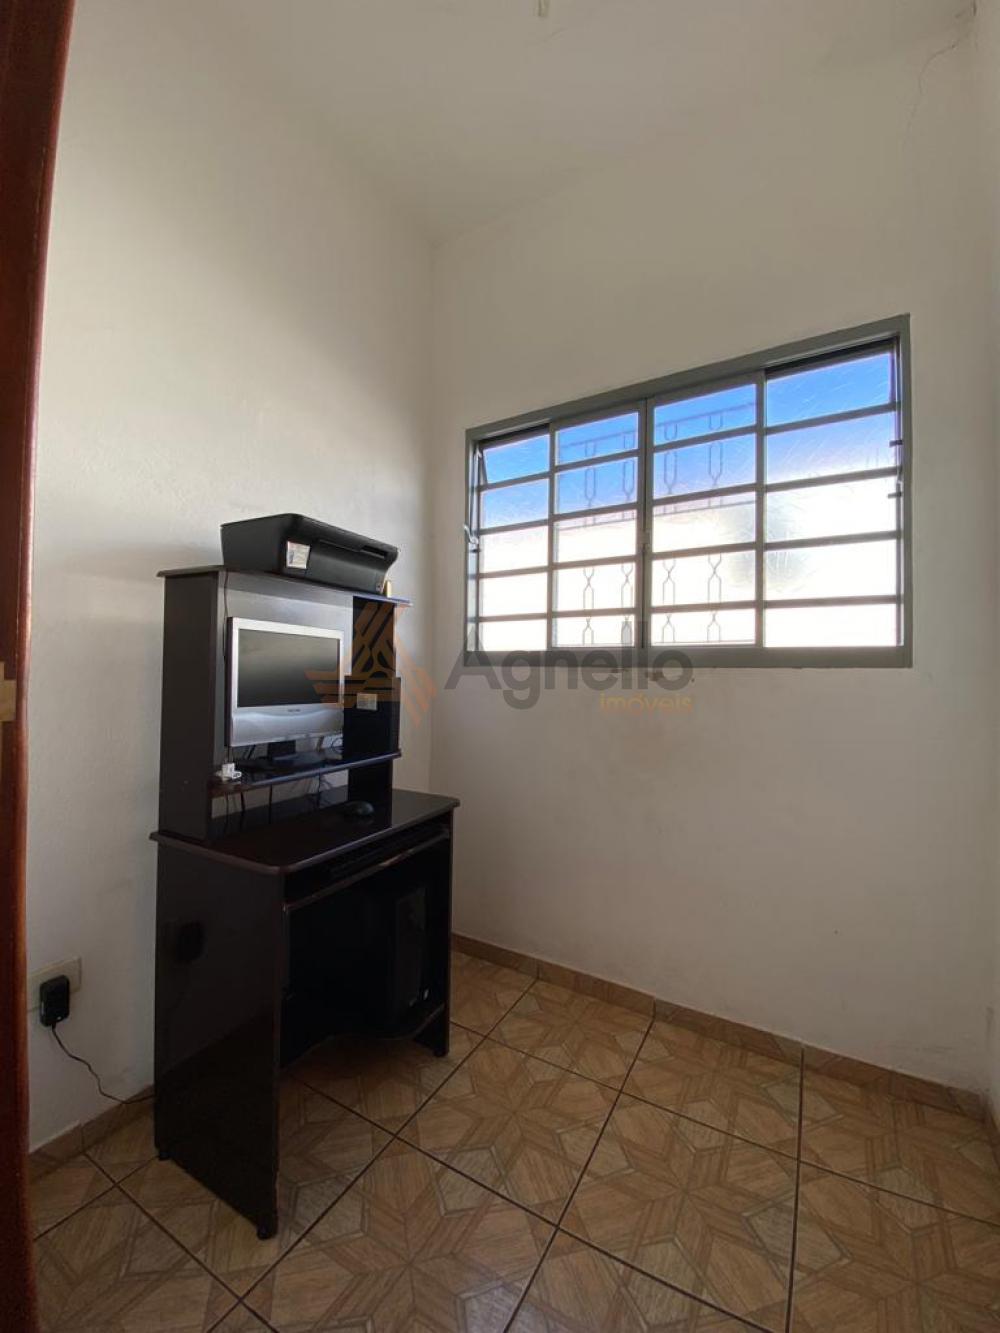 Comprar Casa / Bairro em Franca R$ 215.000,00 - Foto 9